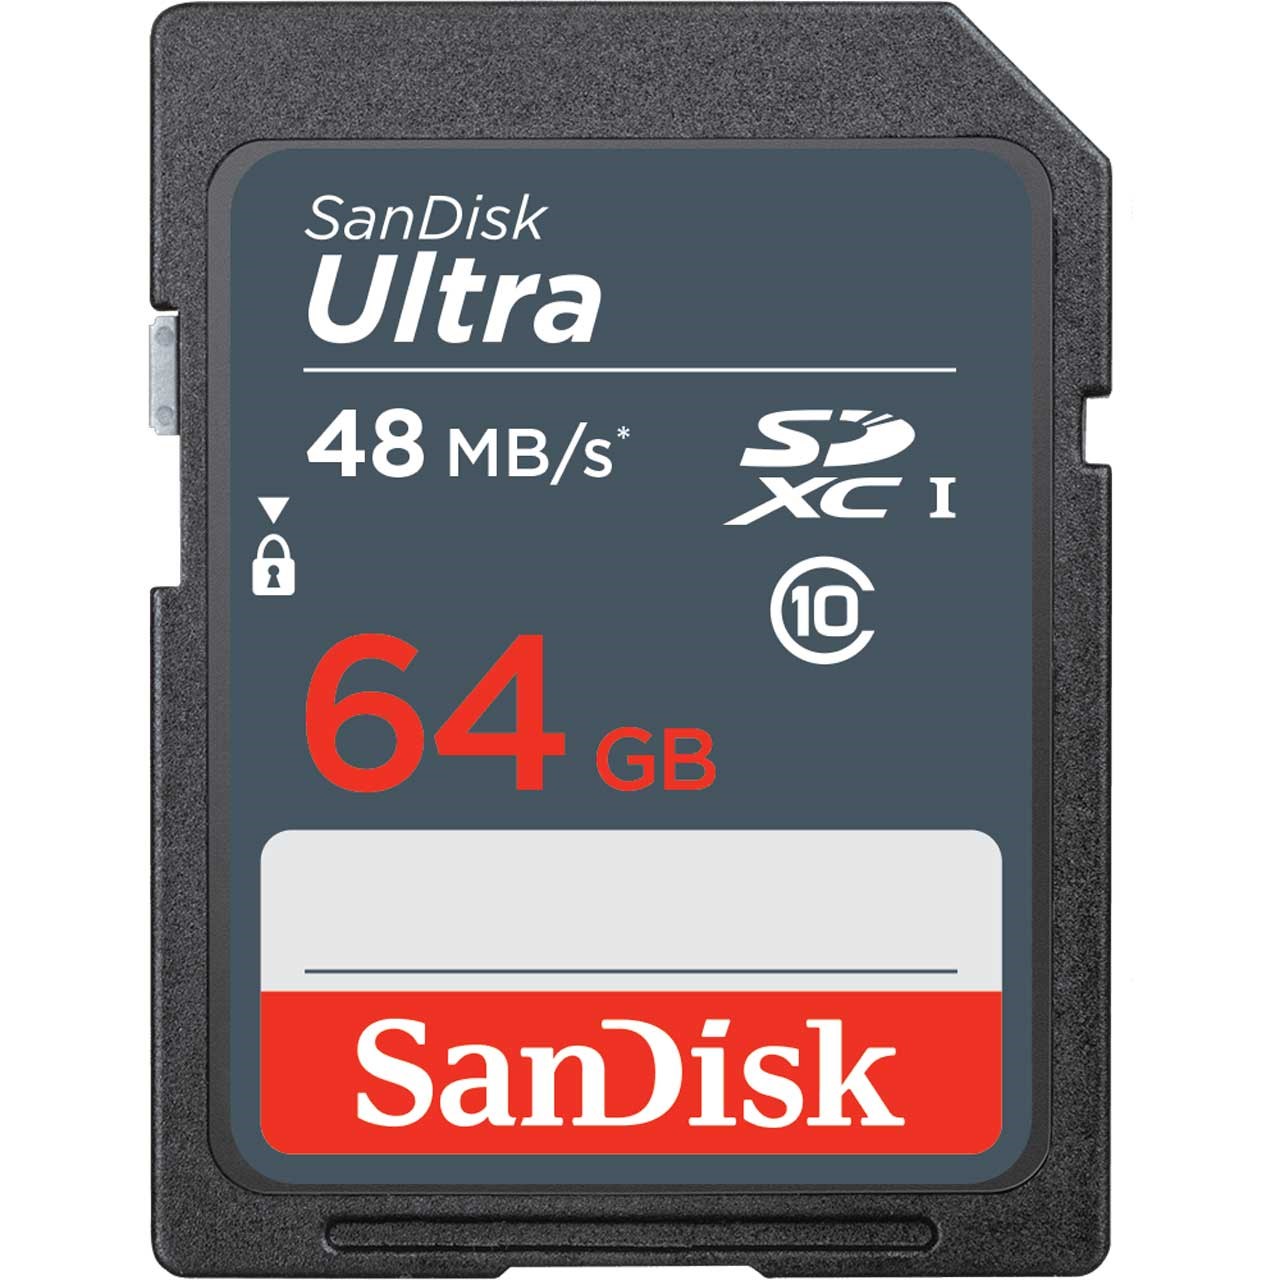 کارت حافظه SDXC سن دیسک مدل Ultra کلاس 10 استاندارد UHS-I سرعت 48MBps ظرفیت 64 گیگابایت